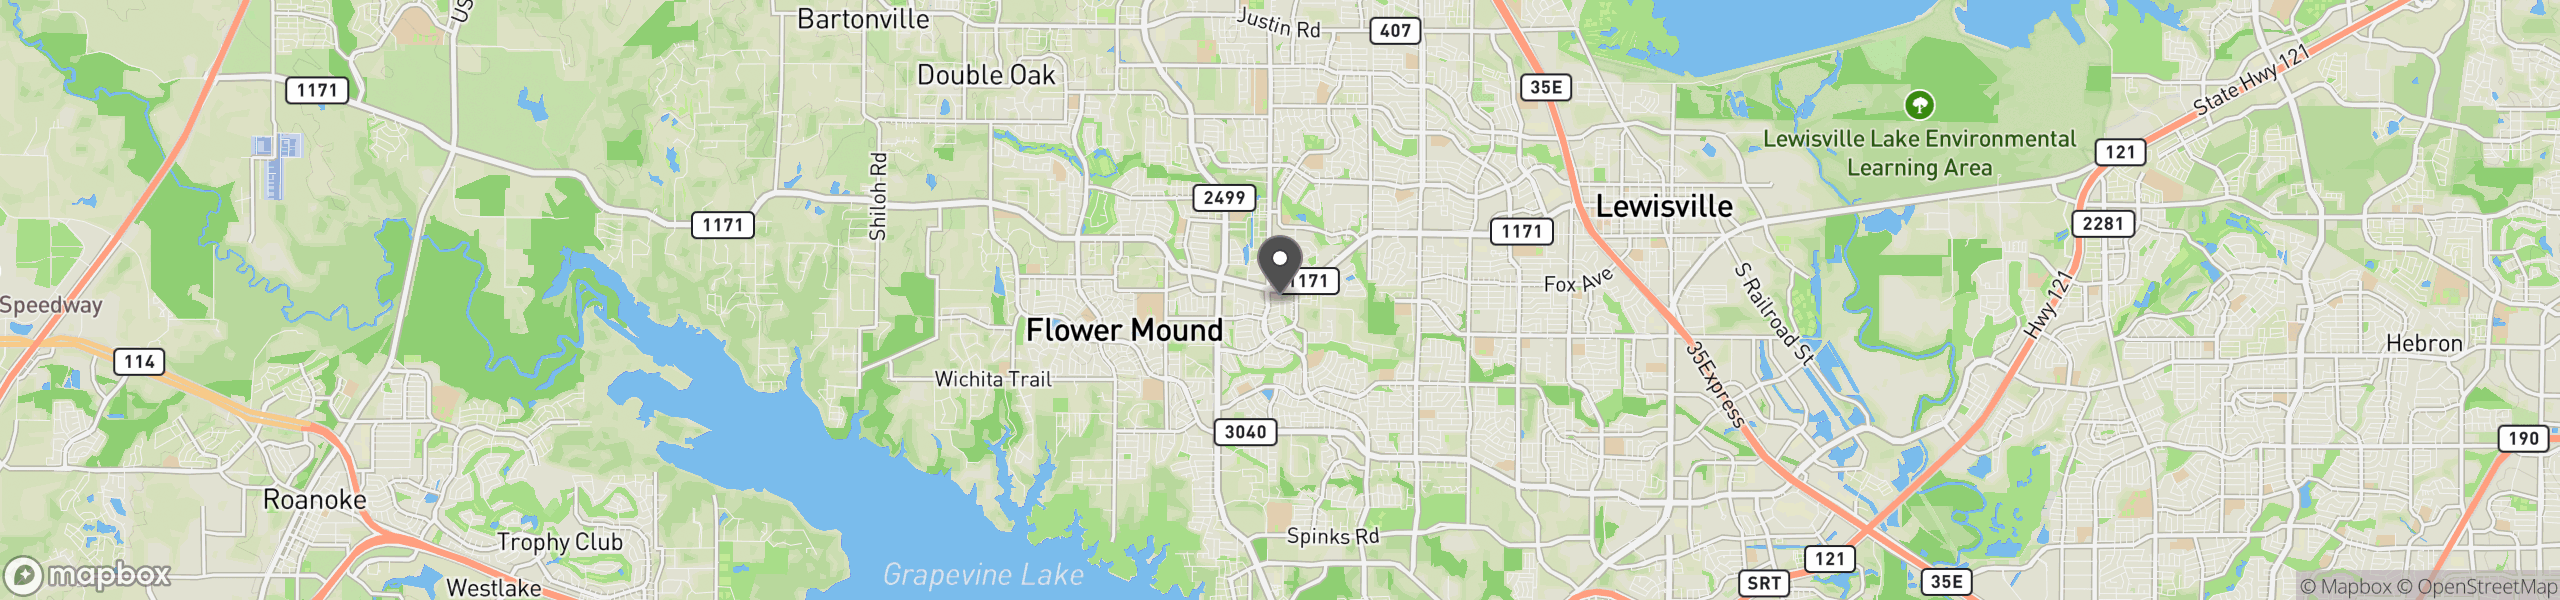 Flower Mound, TX